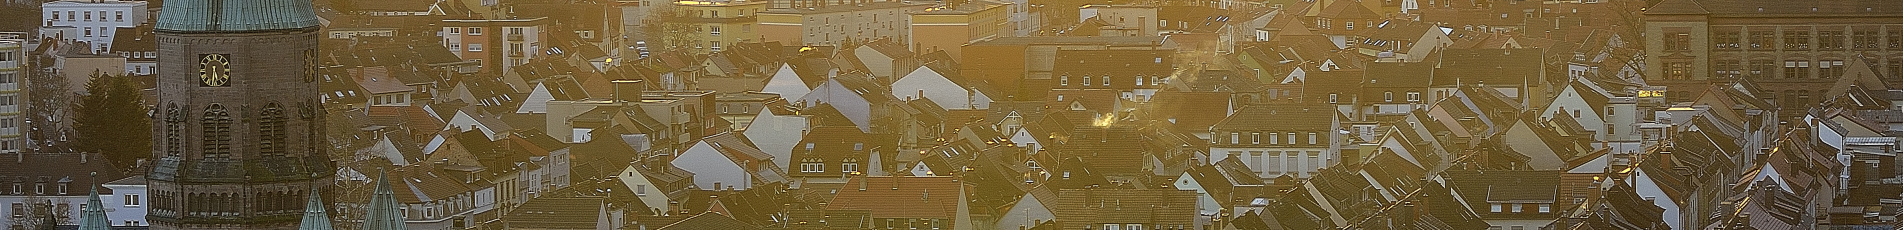 Kaiserslautern von oben